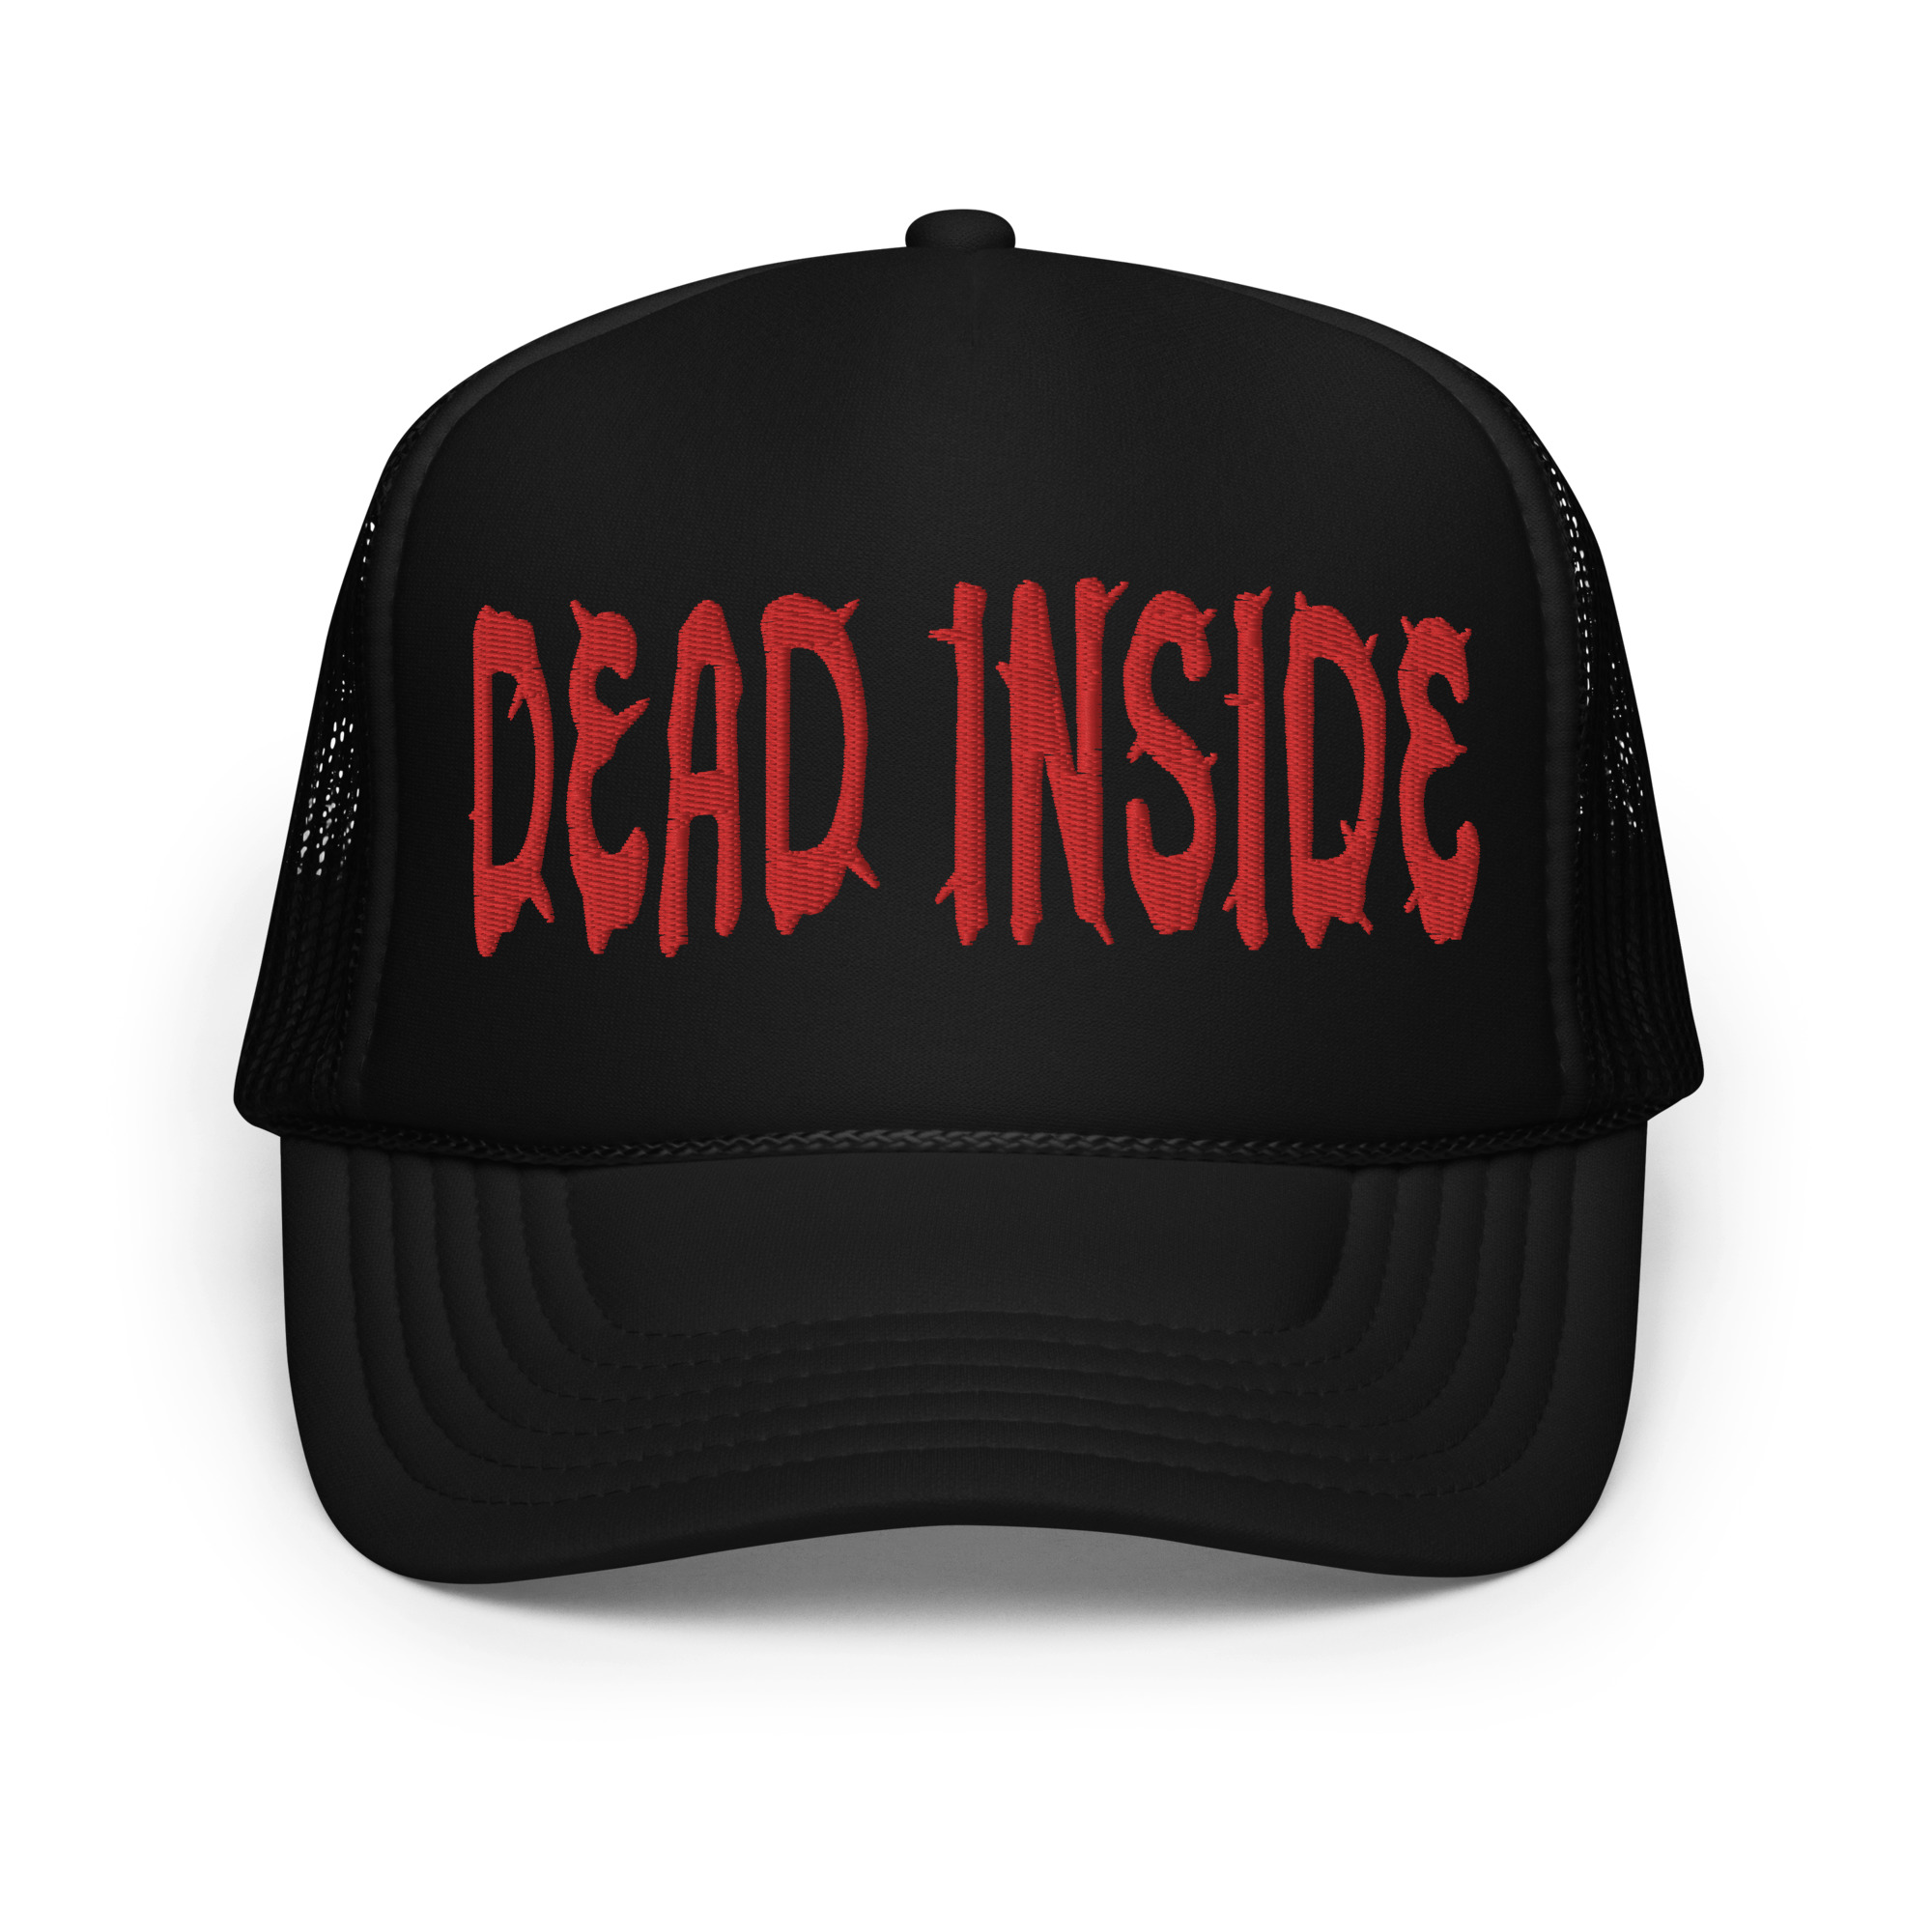 Dead Inside - Foam trucker hat